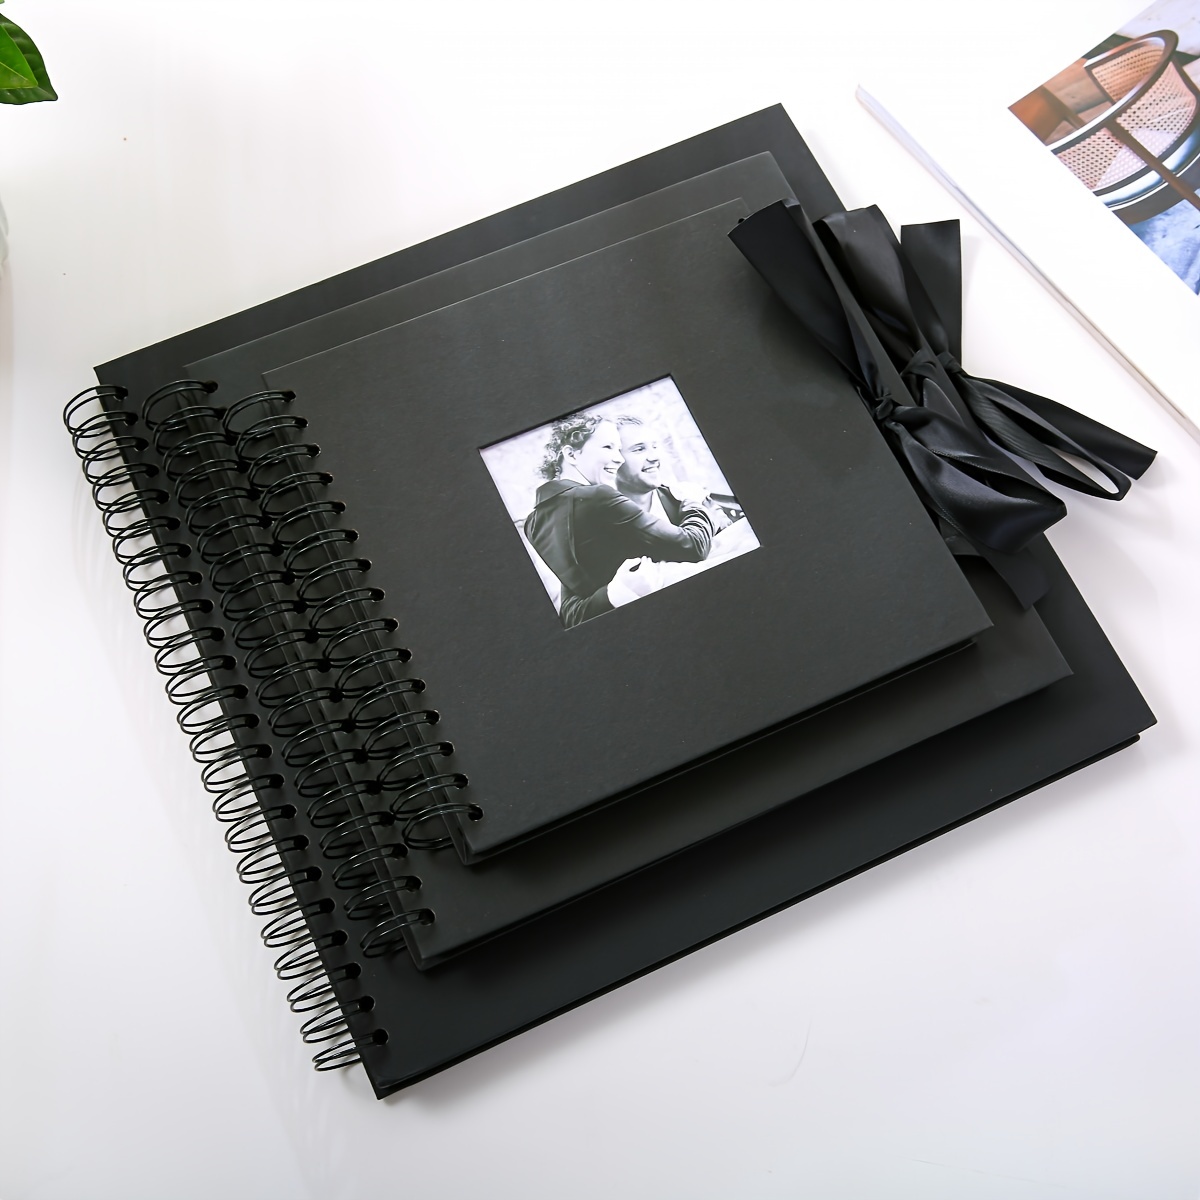 Album de Fotos, Album Fotografico, para Escribir y Pegar Fotografías 10x15,  Polaroid, Fuji Instax. Tapa Personalizable de Alta Calidad. 50 Paginas con  Hojas Negras